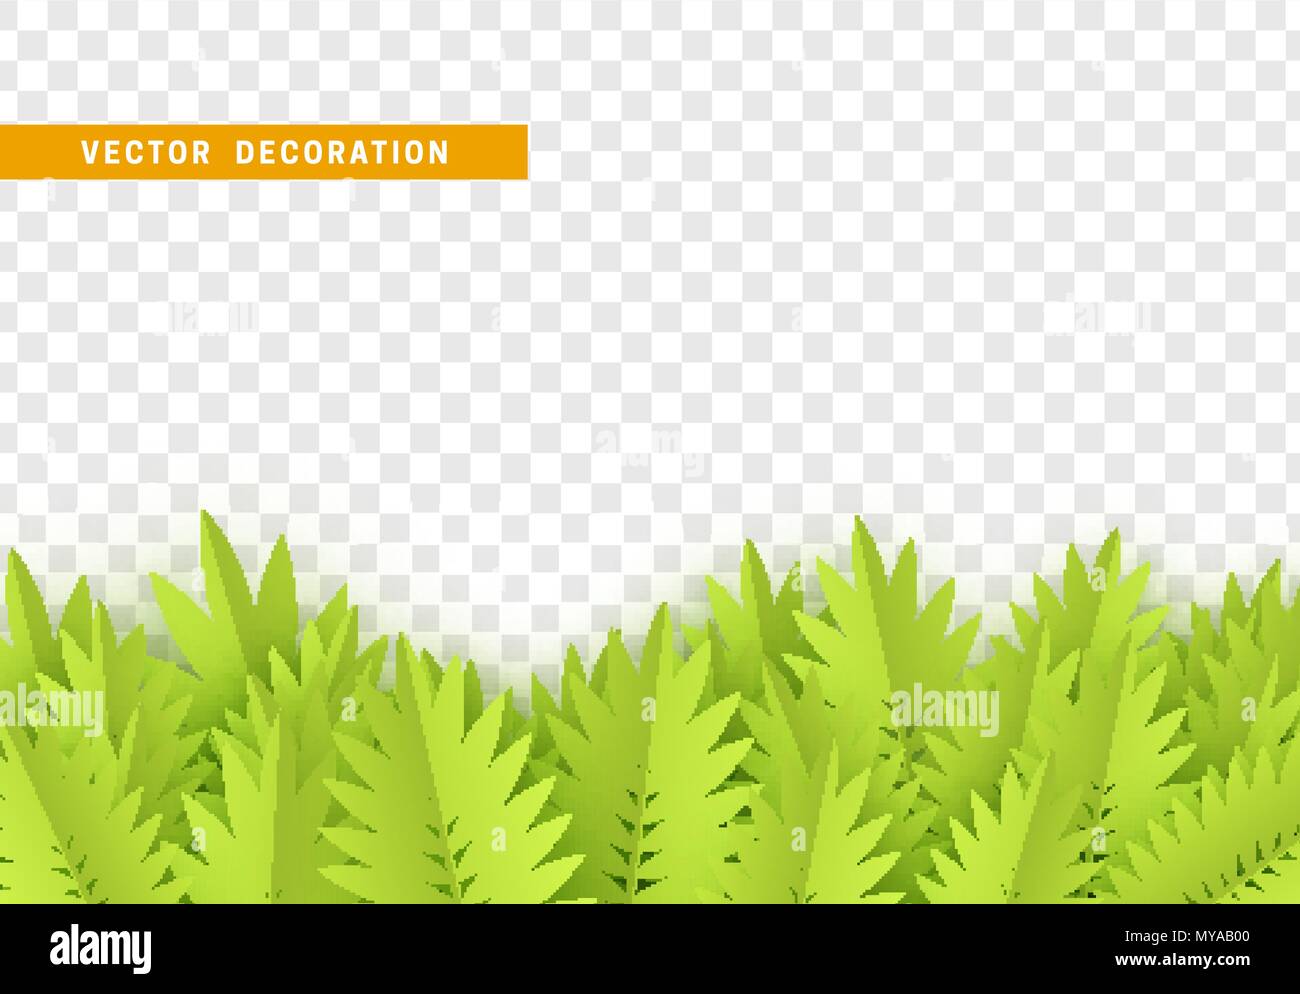 Gras, form Blätter Grenze mit transparenten Hintergrund isoliert. Vector Illustration Stock Vektor